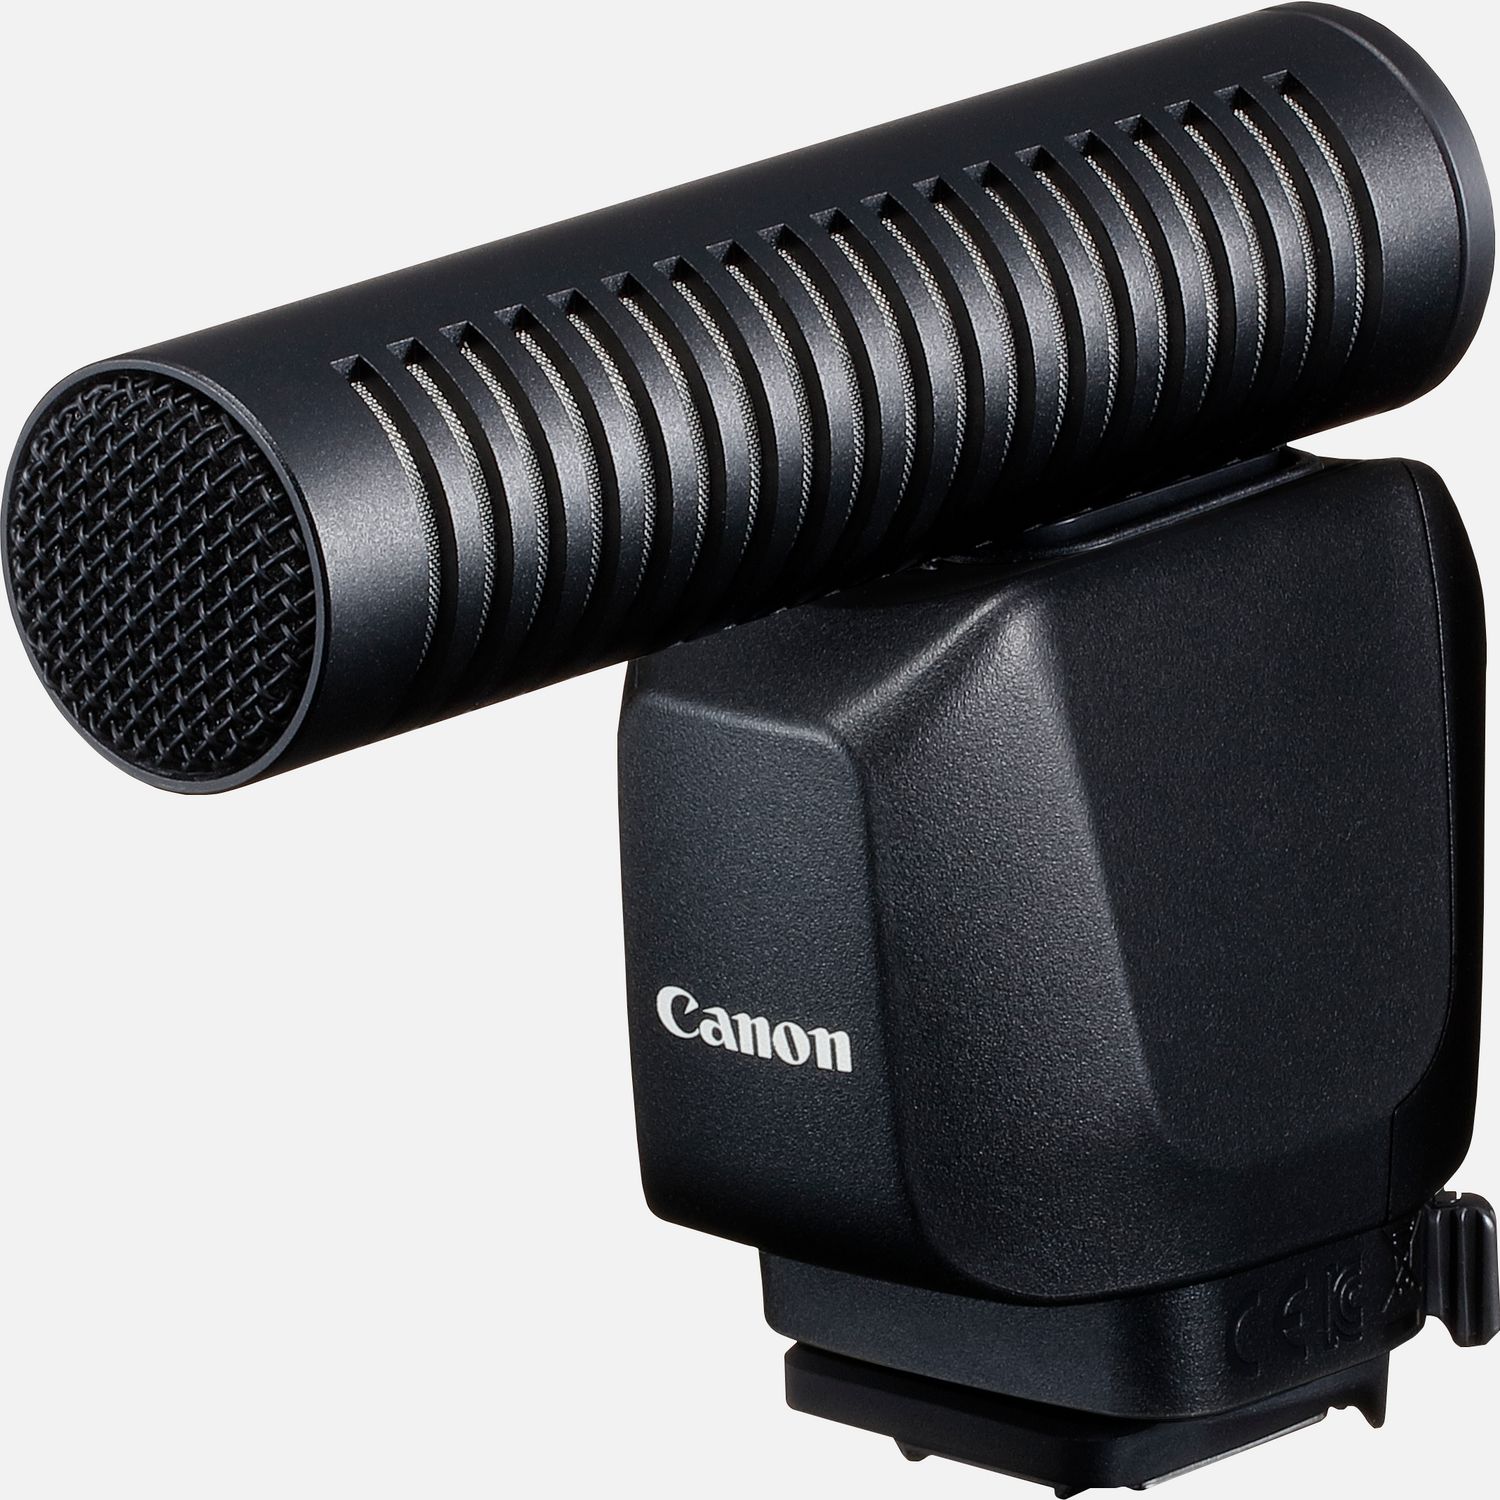 Bringe deine Tonaufnahmen der EOSR3 ins digitale Zeitalter mit klarem Sound von einem Mikrofon fr den Multifunktions-Zubehrschuh von Canon, das bei einfacher Bedienung eine zuverlssige Leistung bringt. Und da es direkt von der Kamera mit Strom versorgt wird, braucht es auch keine Batterien. Das digitale Signal sogt fr klare Tonaufnahmen. Dafr wird das Canon DM-E1D Richtmikrofon einfach auf den Multifunktions-Zubehrschuh der EOSR3 aufgesteckt und ist so zuverlssig und sicher verbunden du kannst dich ganz auf den Moment konzentrieren.  Vorteile      Die digitale Signalverarbeitung sorgt fr ein reineres, klareres Audiosignal und ermglicht ein reichhaltigeres Klangerlebnis mit Tonaufnahmen, die das Publikum mitten ins Geschehen bringt          Fr eine komplett kabellose, zuverlssige und sichere Verbindung wird das Mikrofon einfach auf den Multifunktions-Zubehrschuh kompatibler Kameras aufgesteckt          Du brauchst dir ber Akku- oder Batterieladungen keine Gedanken zu machen das Mikrofon wird direkt von der Kamera mit Strom versorgt          Drei Modi fr die Richtungsabnahme geben dir die Flexibilitt, den Ton ganz nach deinen Vorstellungen aufzunehmen. Du kannst zwischen Shotgun (Mono), 90 oder 120 in Stereo whlen und es so an die unterschiedlichsten Umgebungen anpassen          Wenn du die MENU-Taste am Mikrofon drckst, wird das Men fr die Audioeinstellungen auf dem LC-Display der Kamera angezeigt, worber die schnelle und einfache Bedienung und Steuerung erfolgt          Der Windfilter reduziert den Einfluss von Wind und sorgt dafr, dass die Tonaufnahmen klar und deutlich werden          Lieferumfang       DM-E1D Stereo Richtmikrofon         Windschutz         (Zubehrschuh) Abdeckung         Anleitungen            Kompatibilitt       EOS R3         EOS R7         EOS R10         EOS R6 Mark II